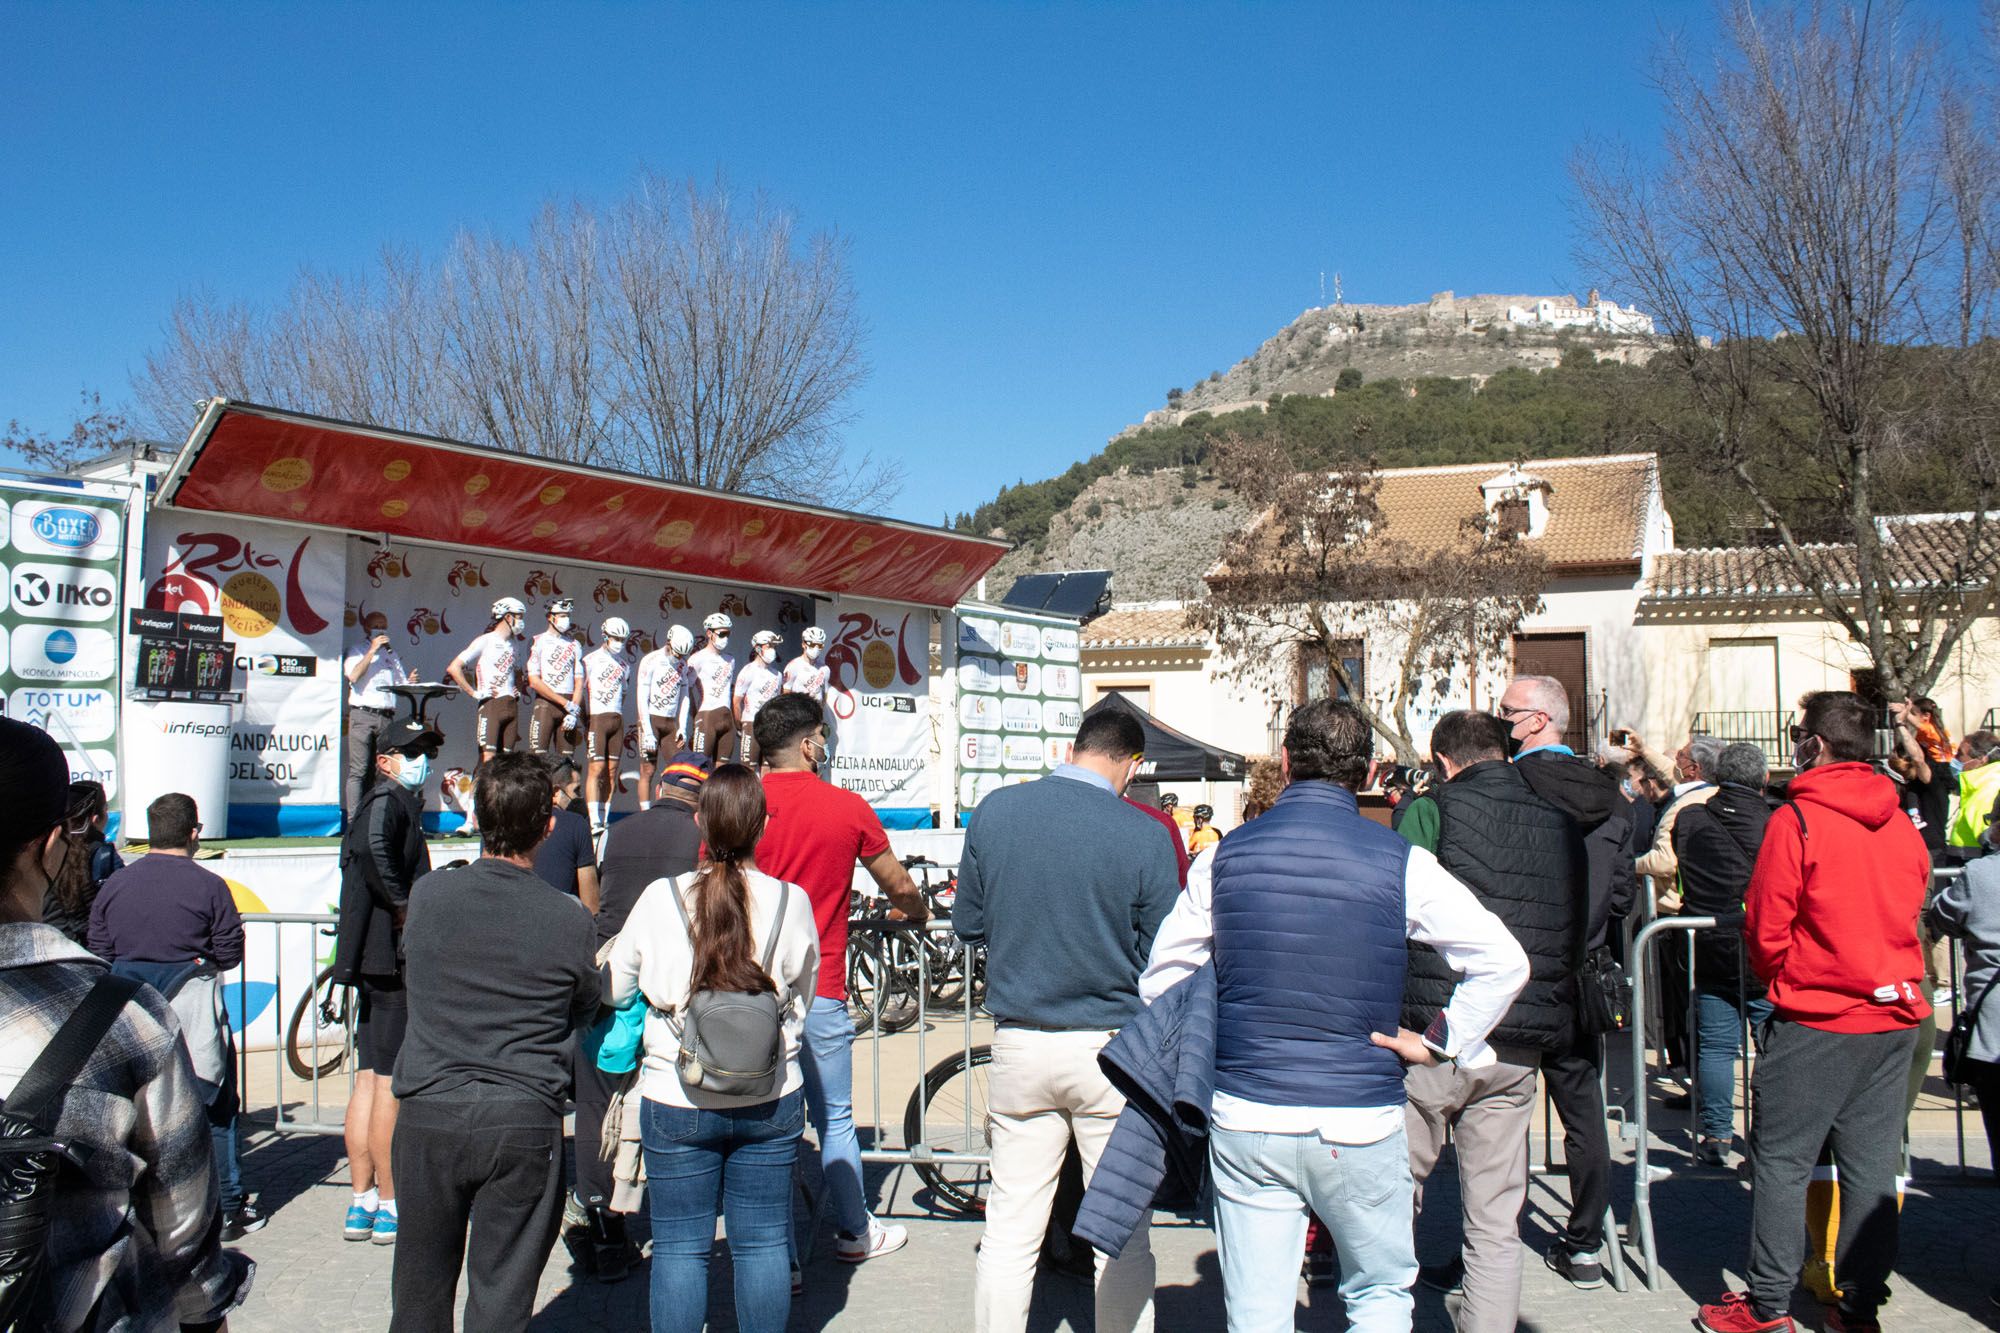 Salida de la segunda etapa de la Vuelta a Andalucía - Ruta del Sol 2022 en Archidona